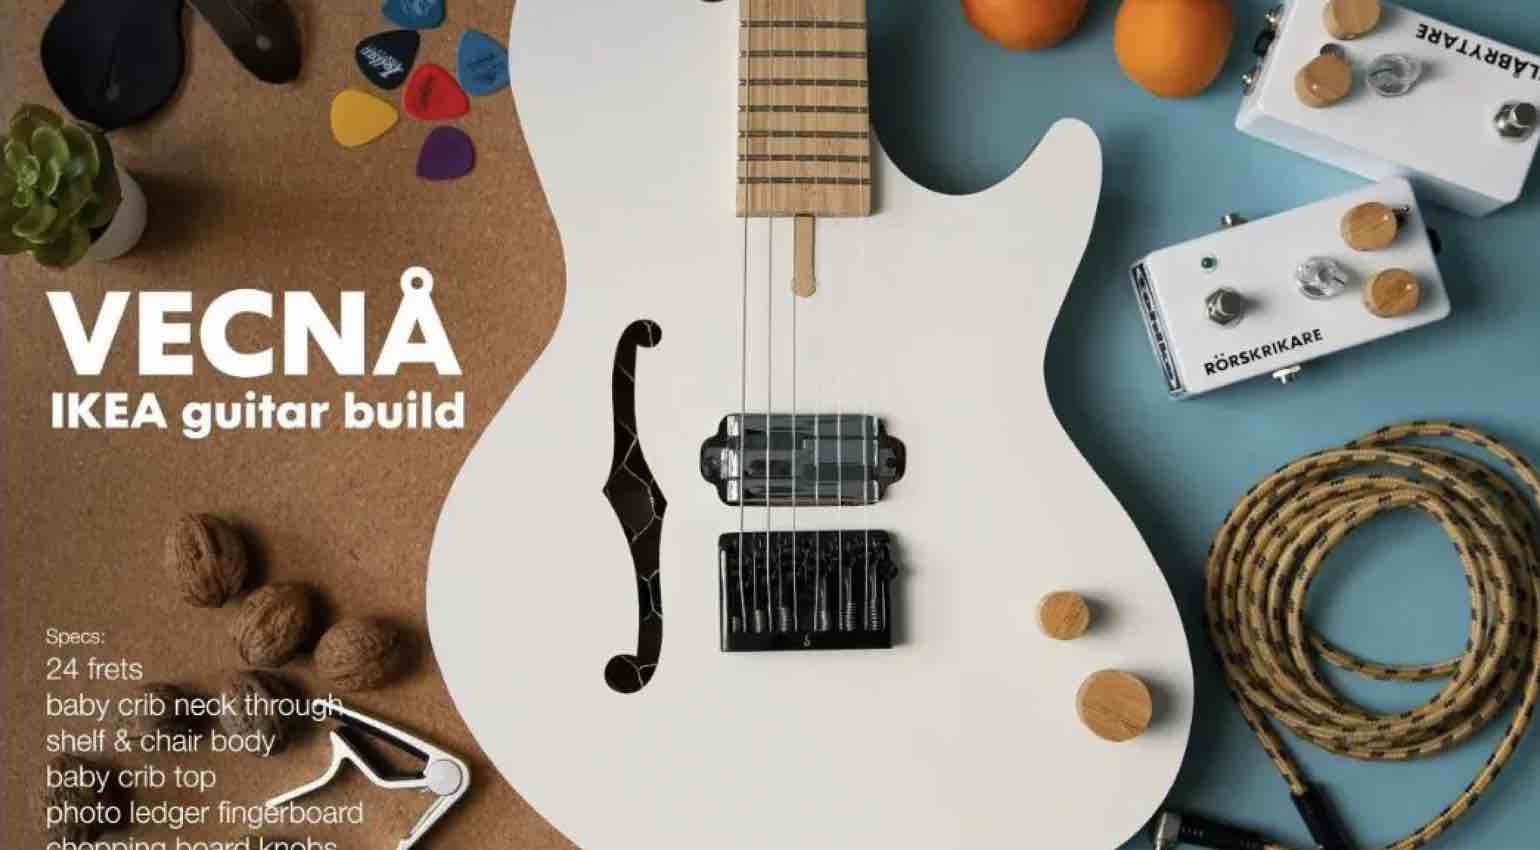 IKEA VECNA Guitar